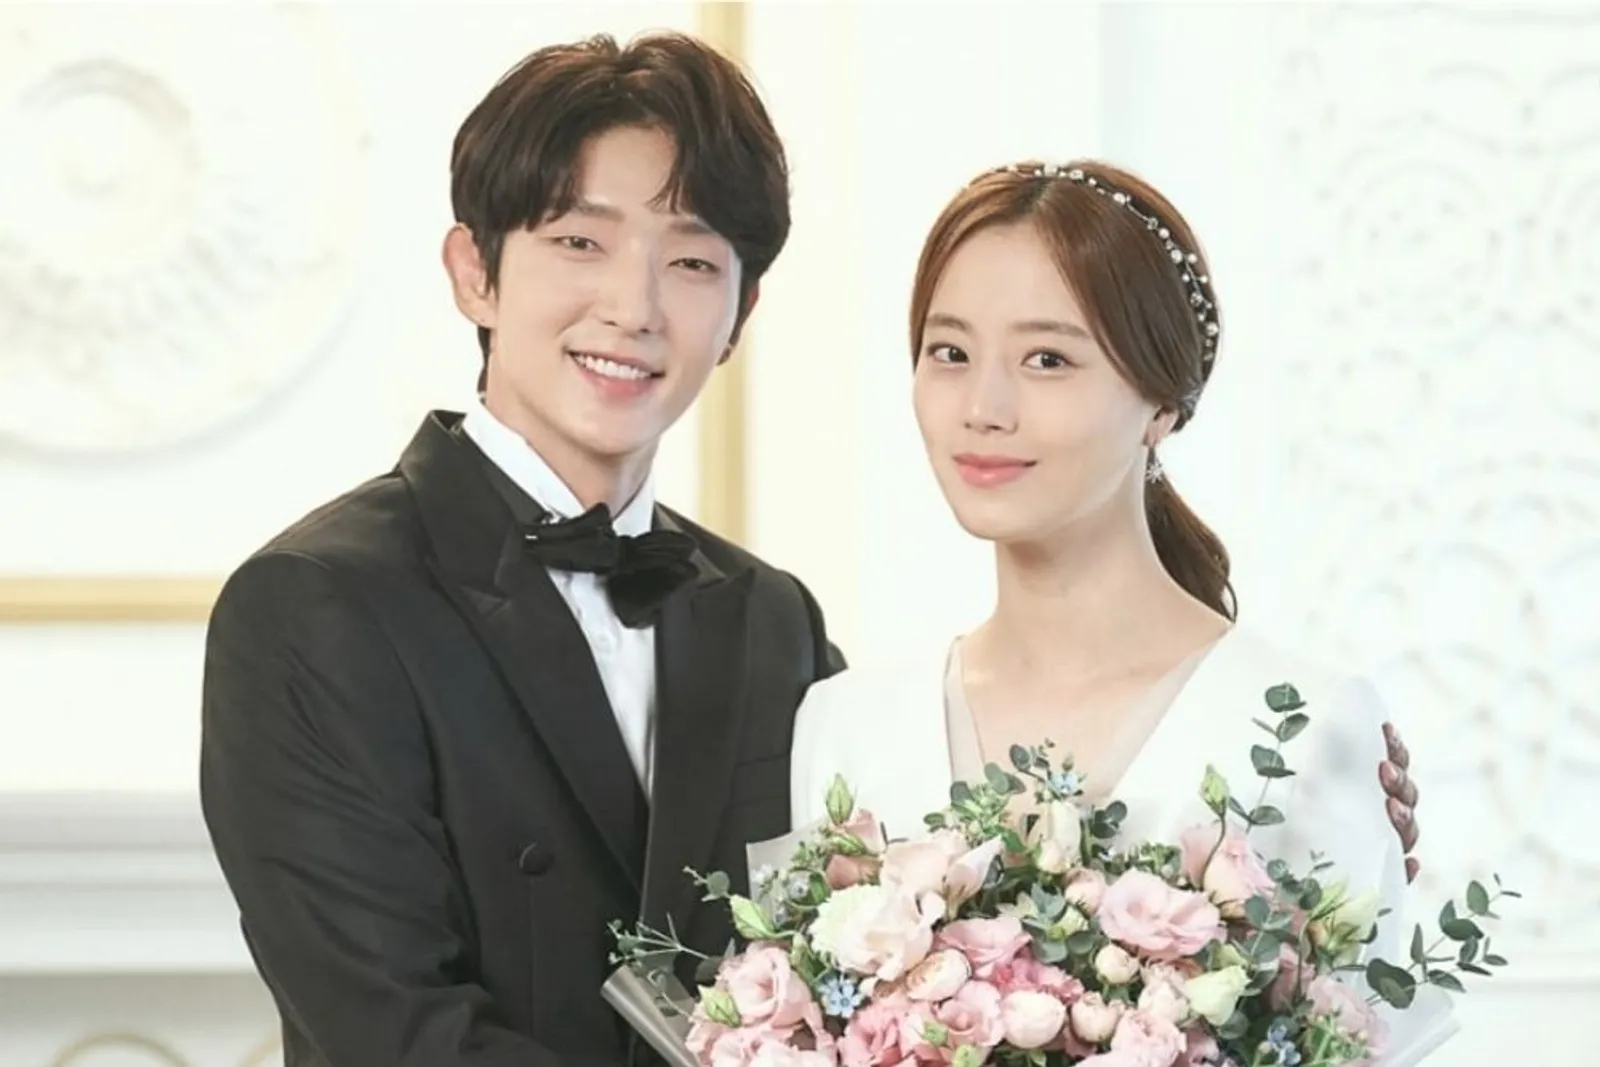 Suzy dan Aktris Lainnya yang Tampil Memesona ketika 'Menikah' di 2020